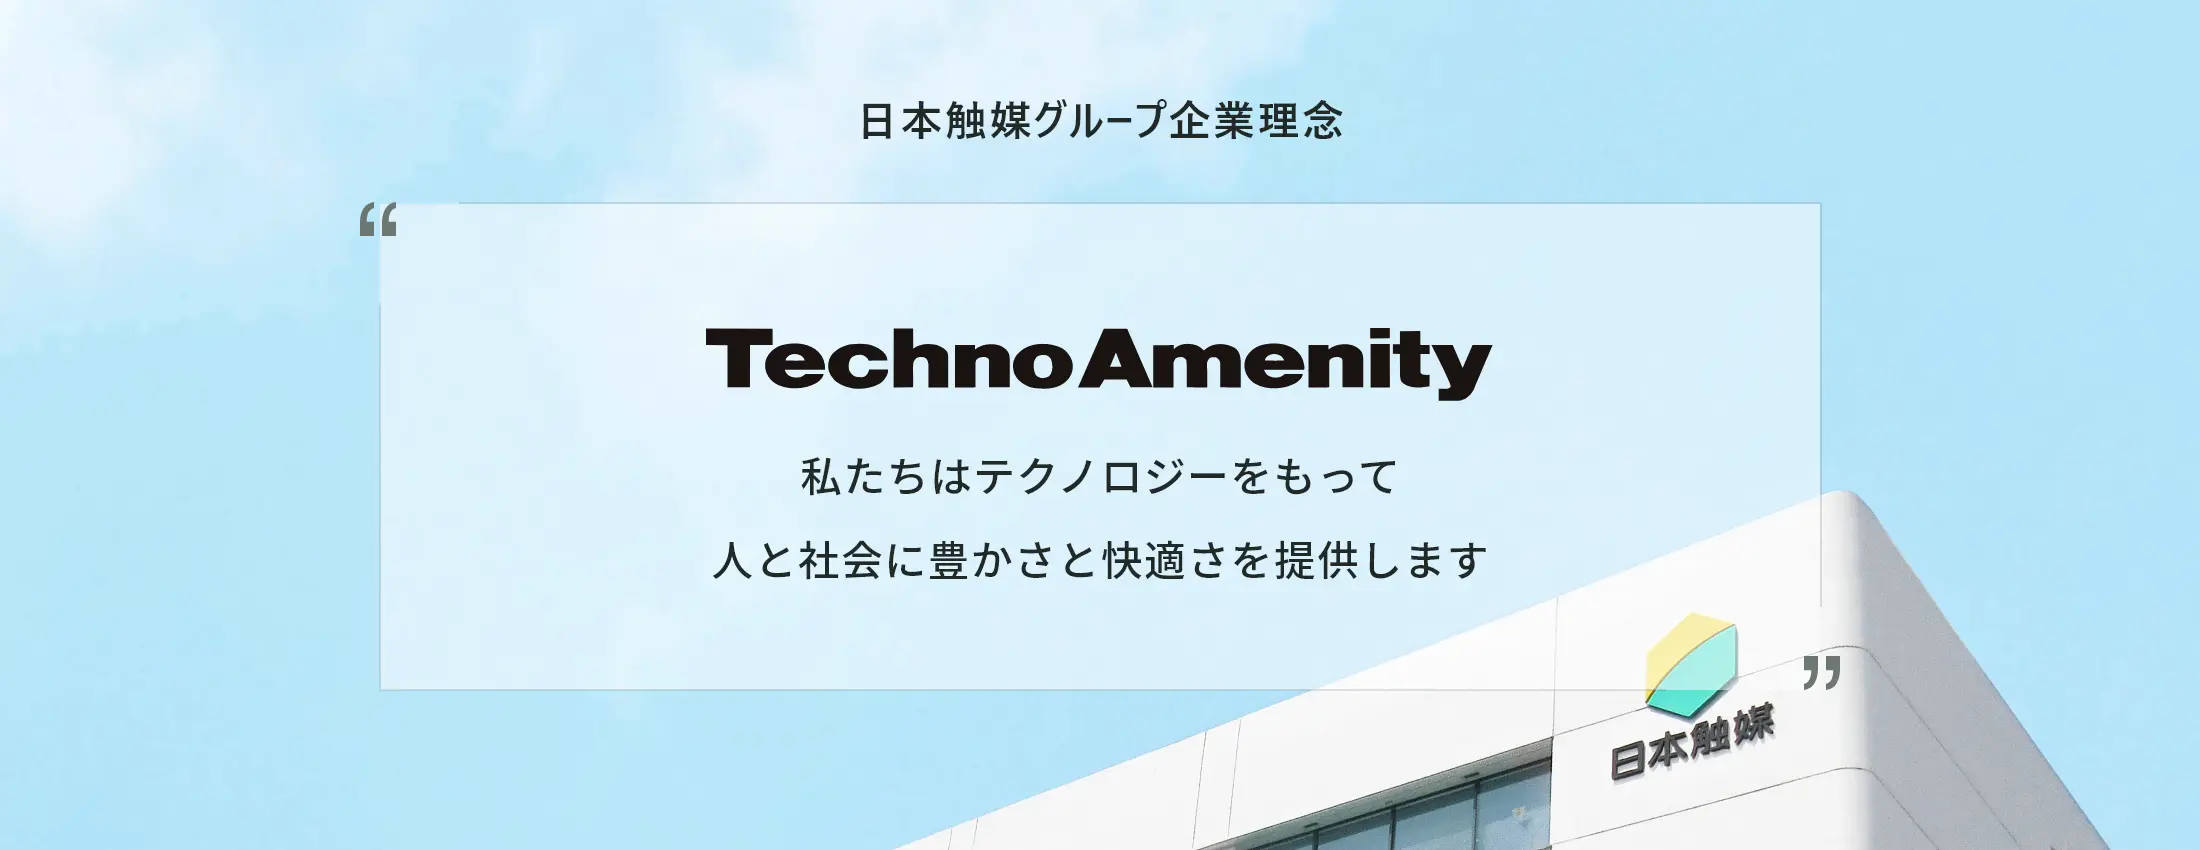 日本触媒グループ企業理念 Techno Amenity 私たちはテクノロジーをもって人と社会に豊かさと快適さを提供します